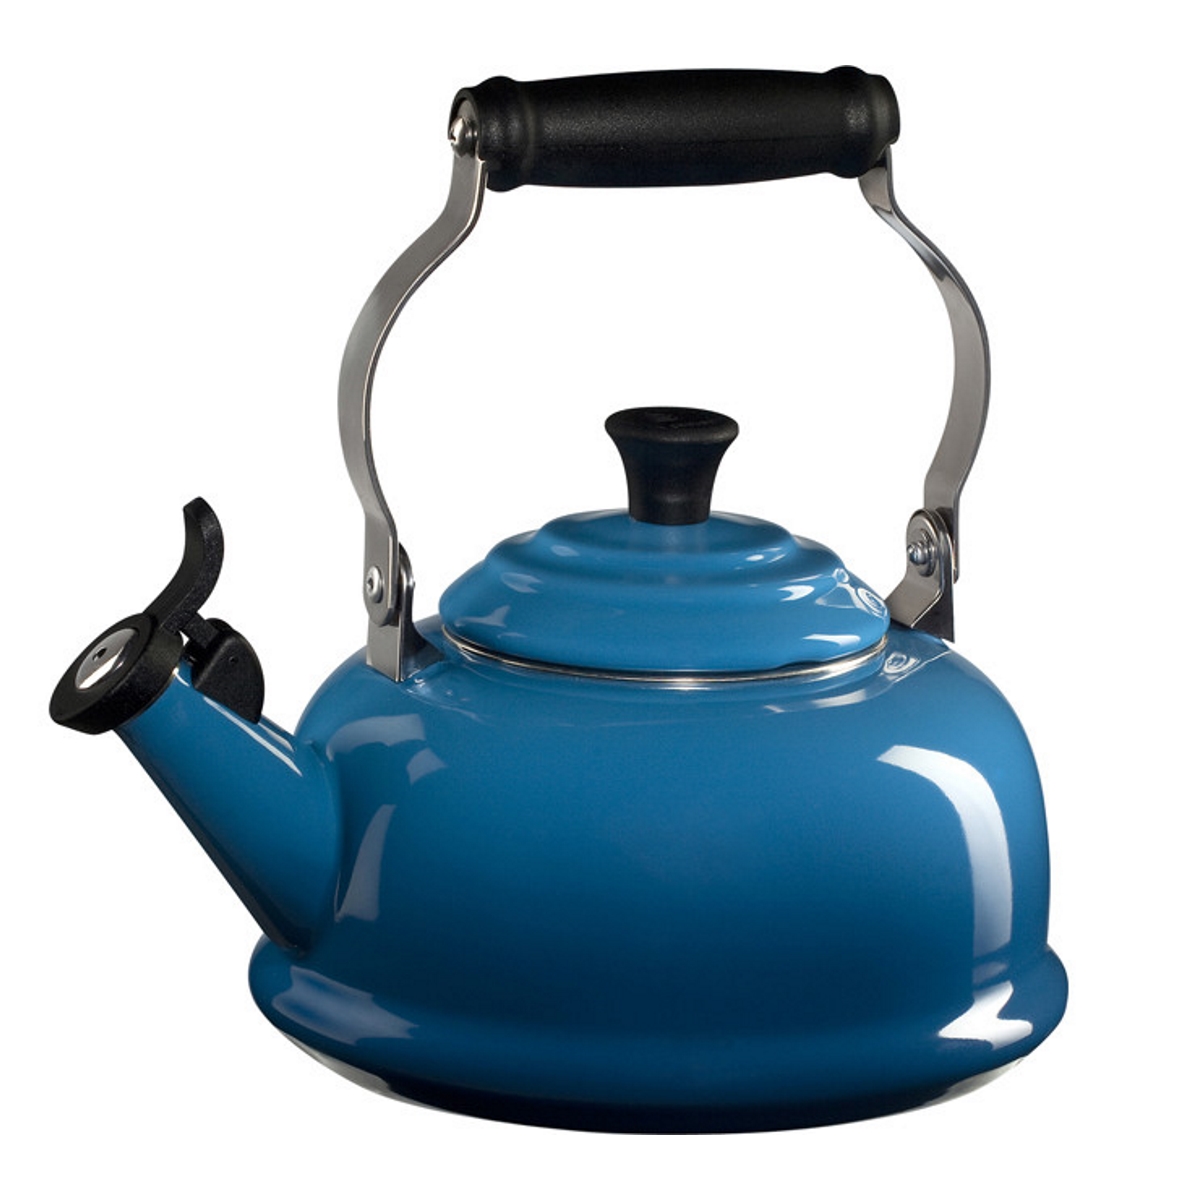 Oggi - Stainless Steel Whistling Tea Kettle, Blue